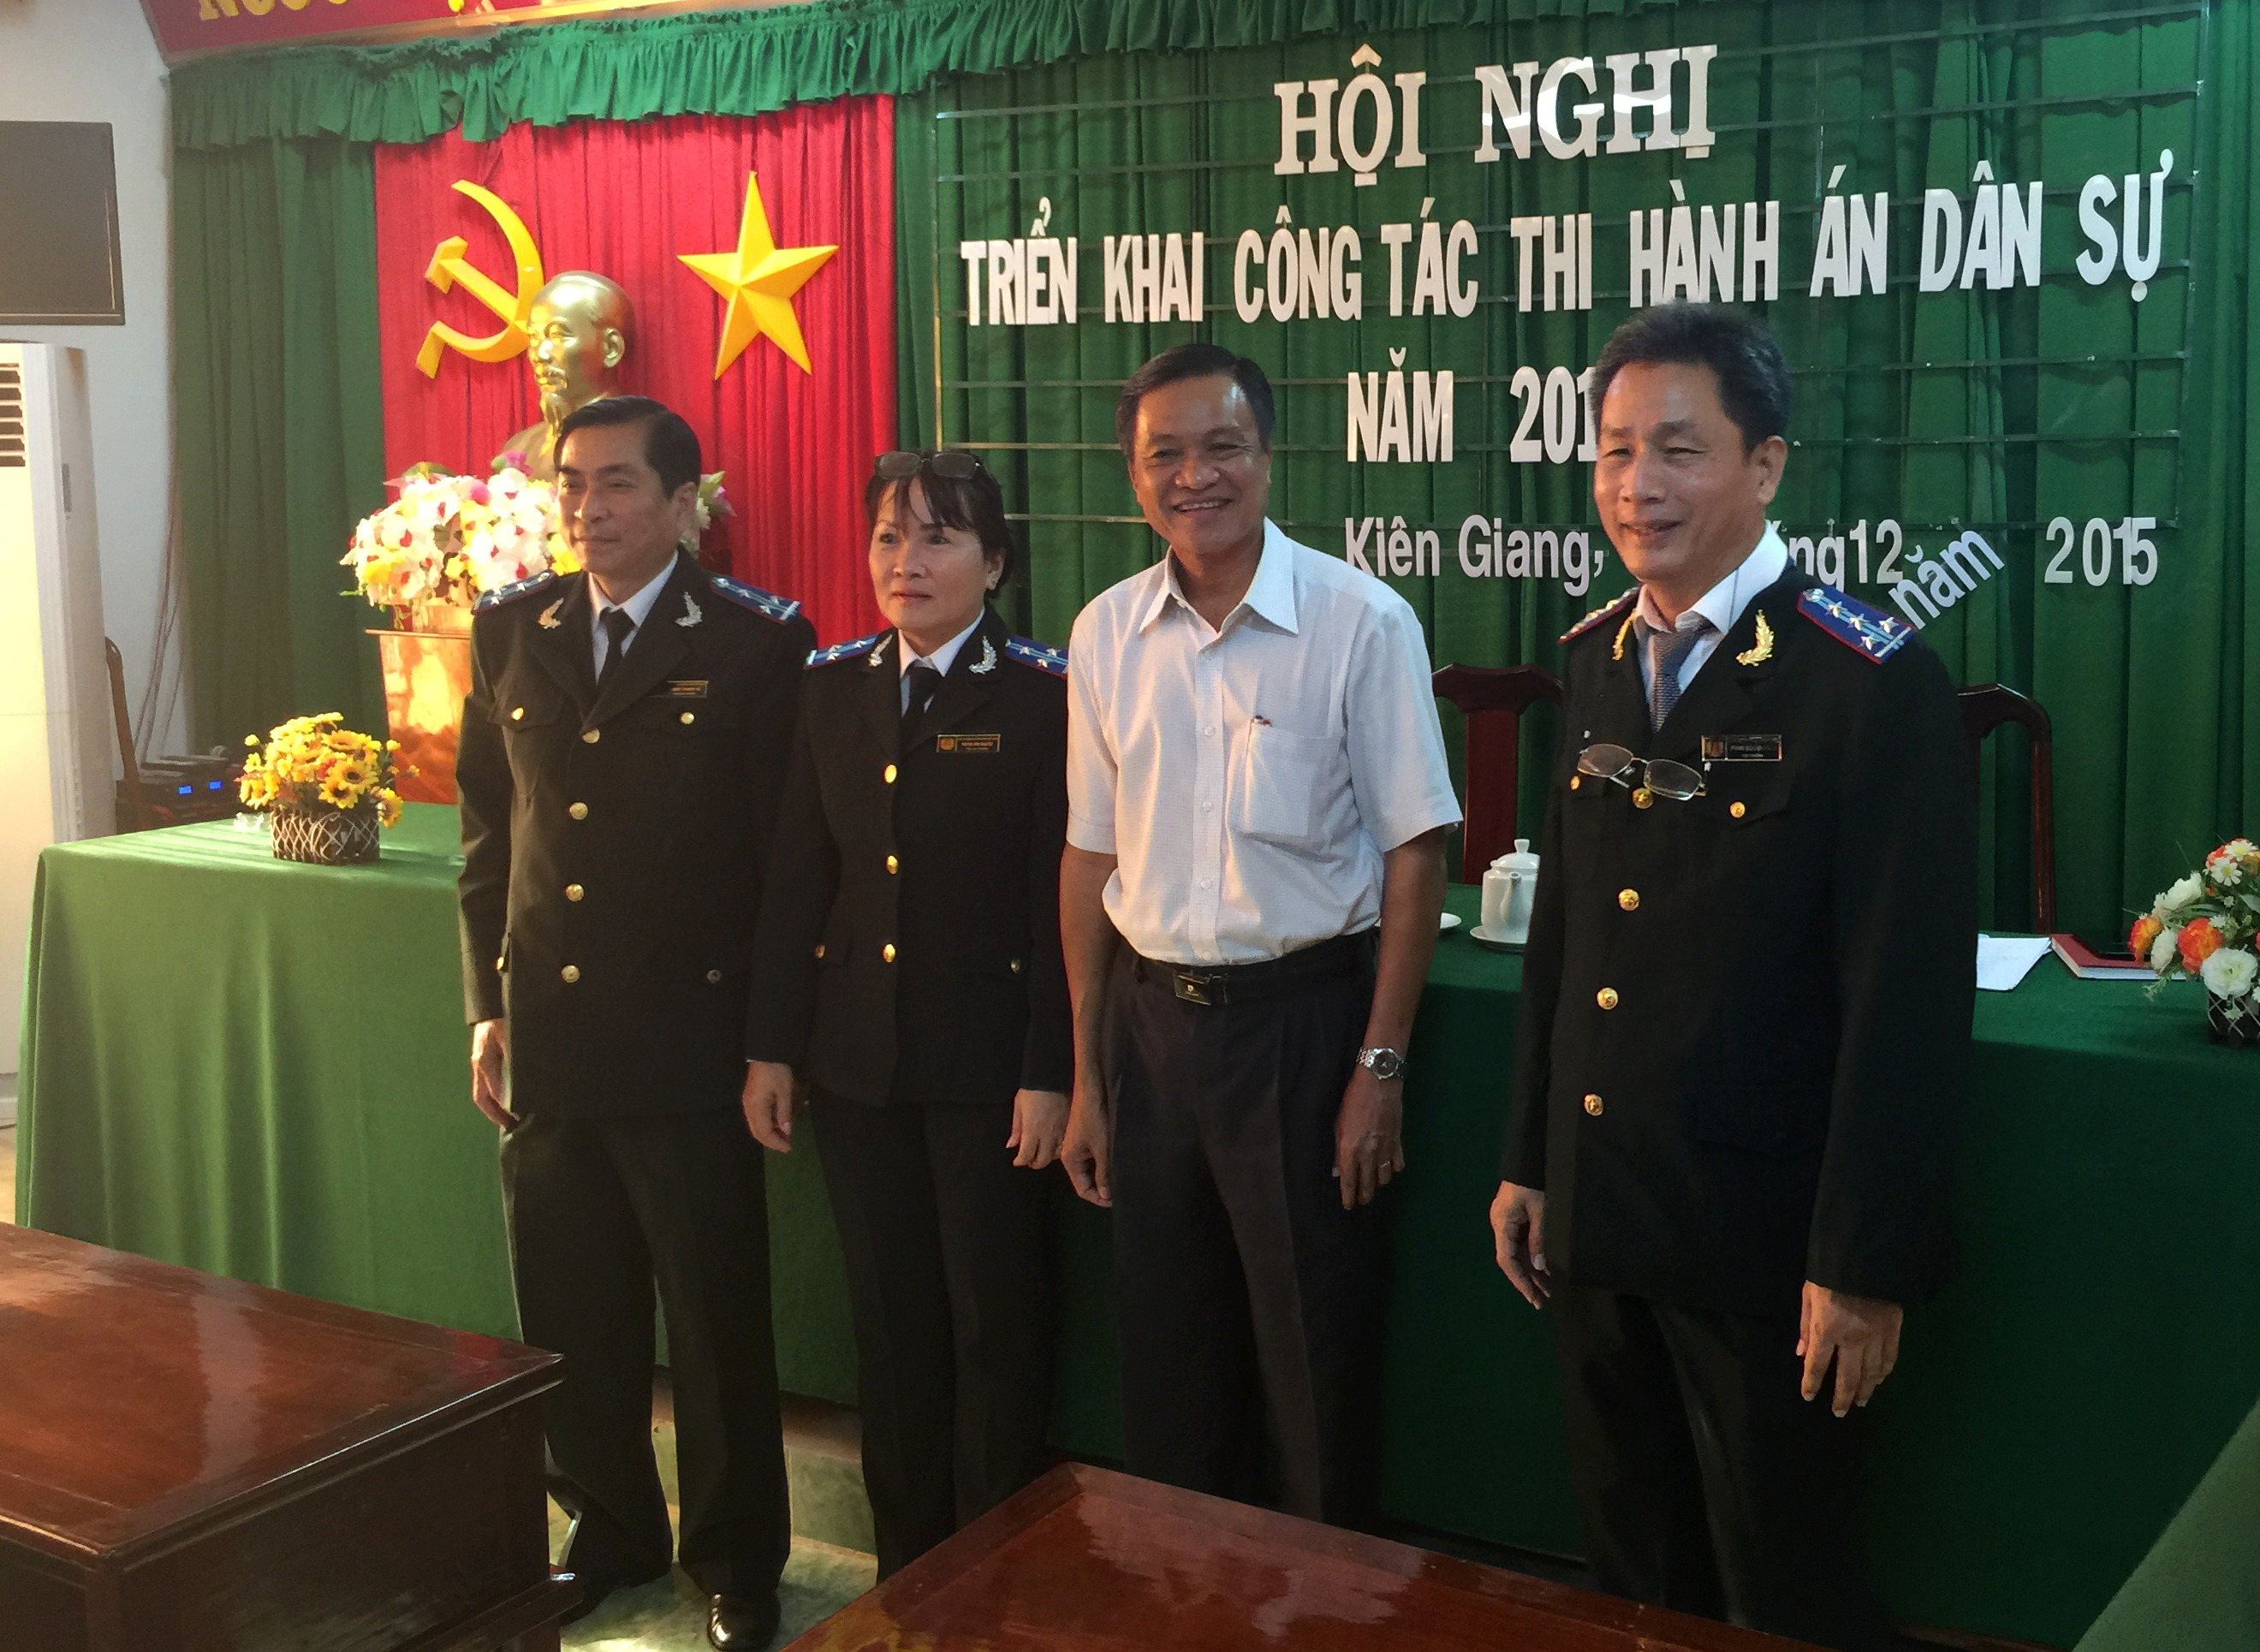 Cục Thi hành án dân sự tỉnh Kiên Giang tổ chức Hội nghị triển khai công tác thi hành án dân sự năm 2016